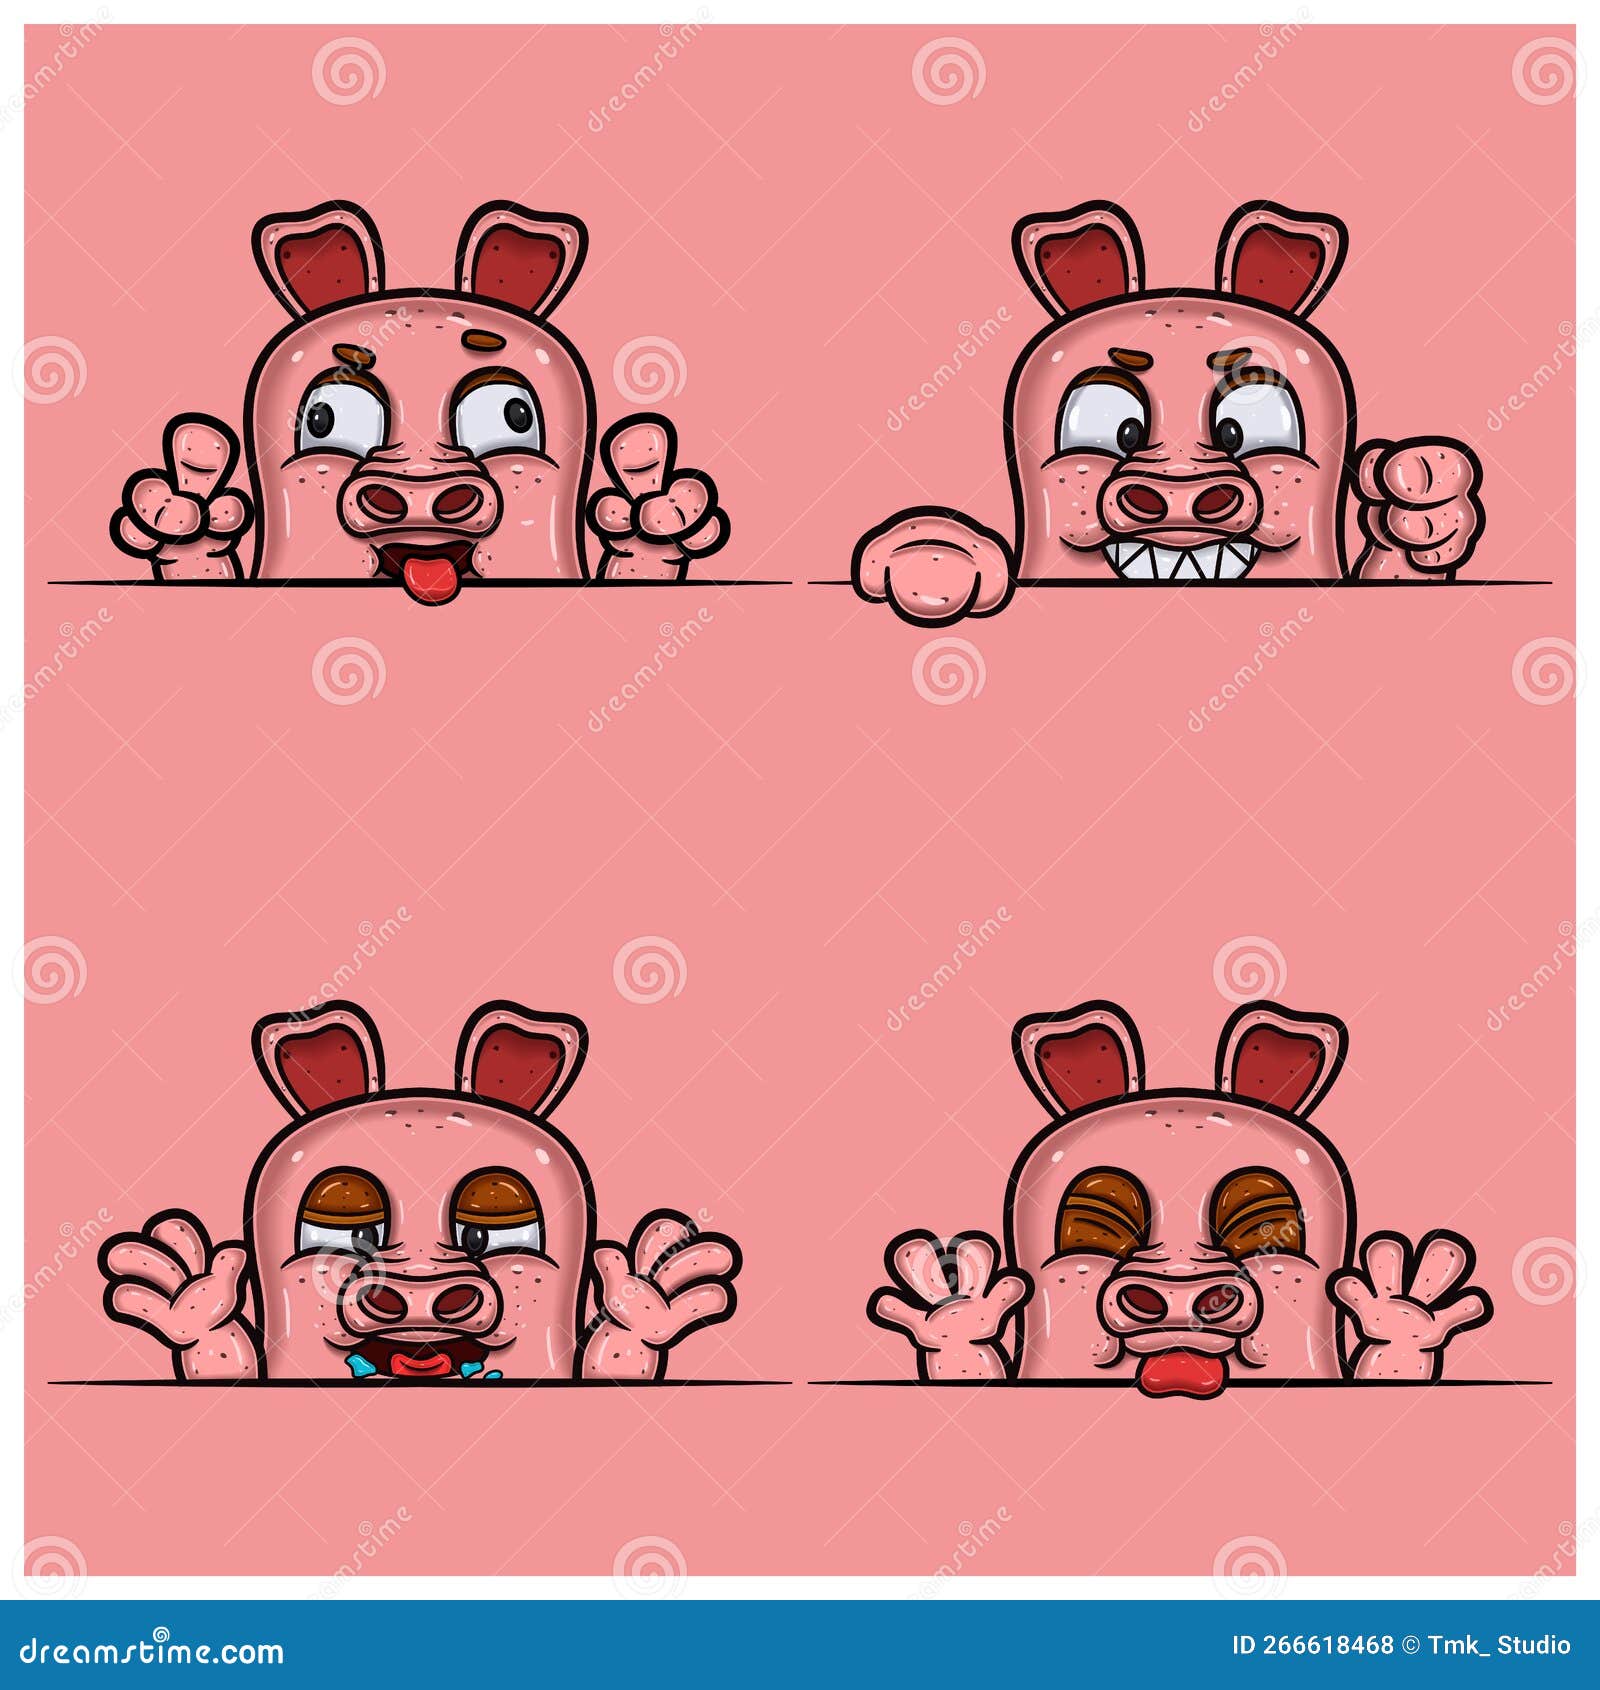 Ilustração de desenho animado de esponja com design de personagens de rosto  triste